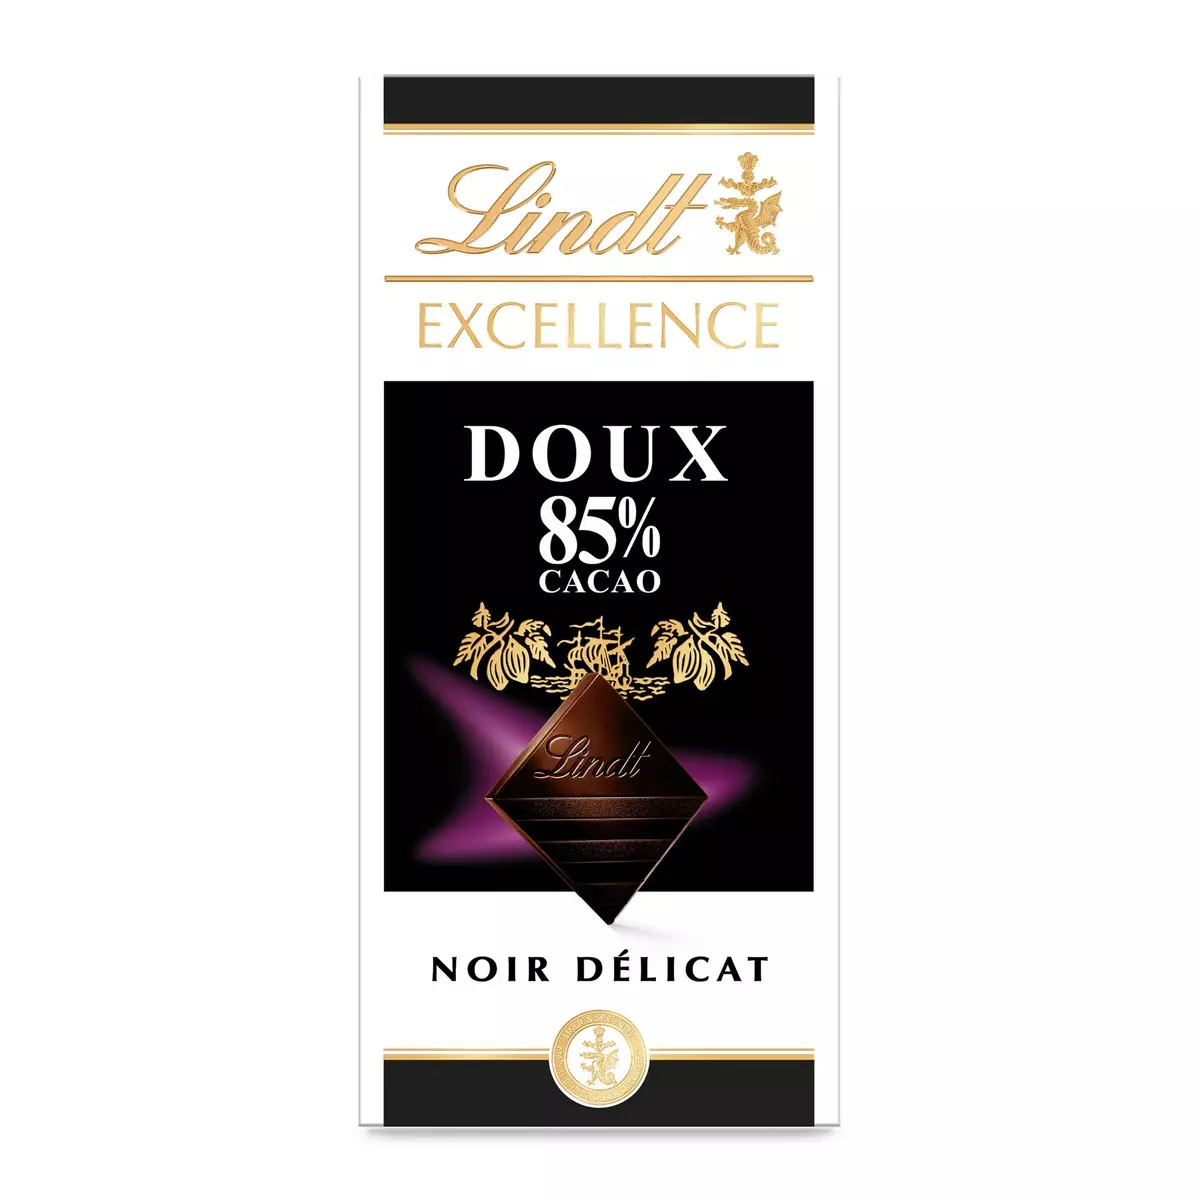 LINDT Excellence tablette de chocolat noir doux 85% cacao 1 pièce 100g